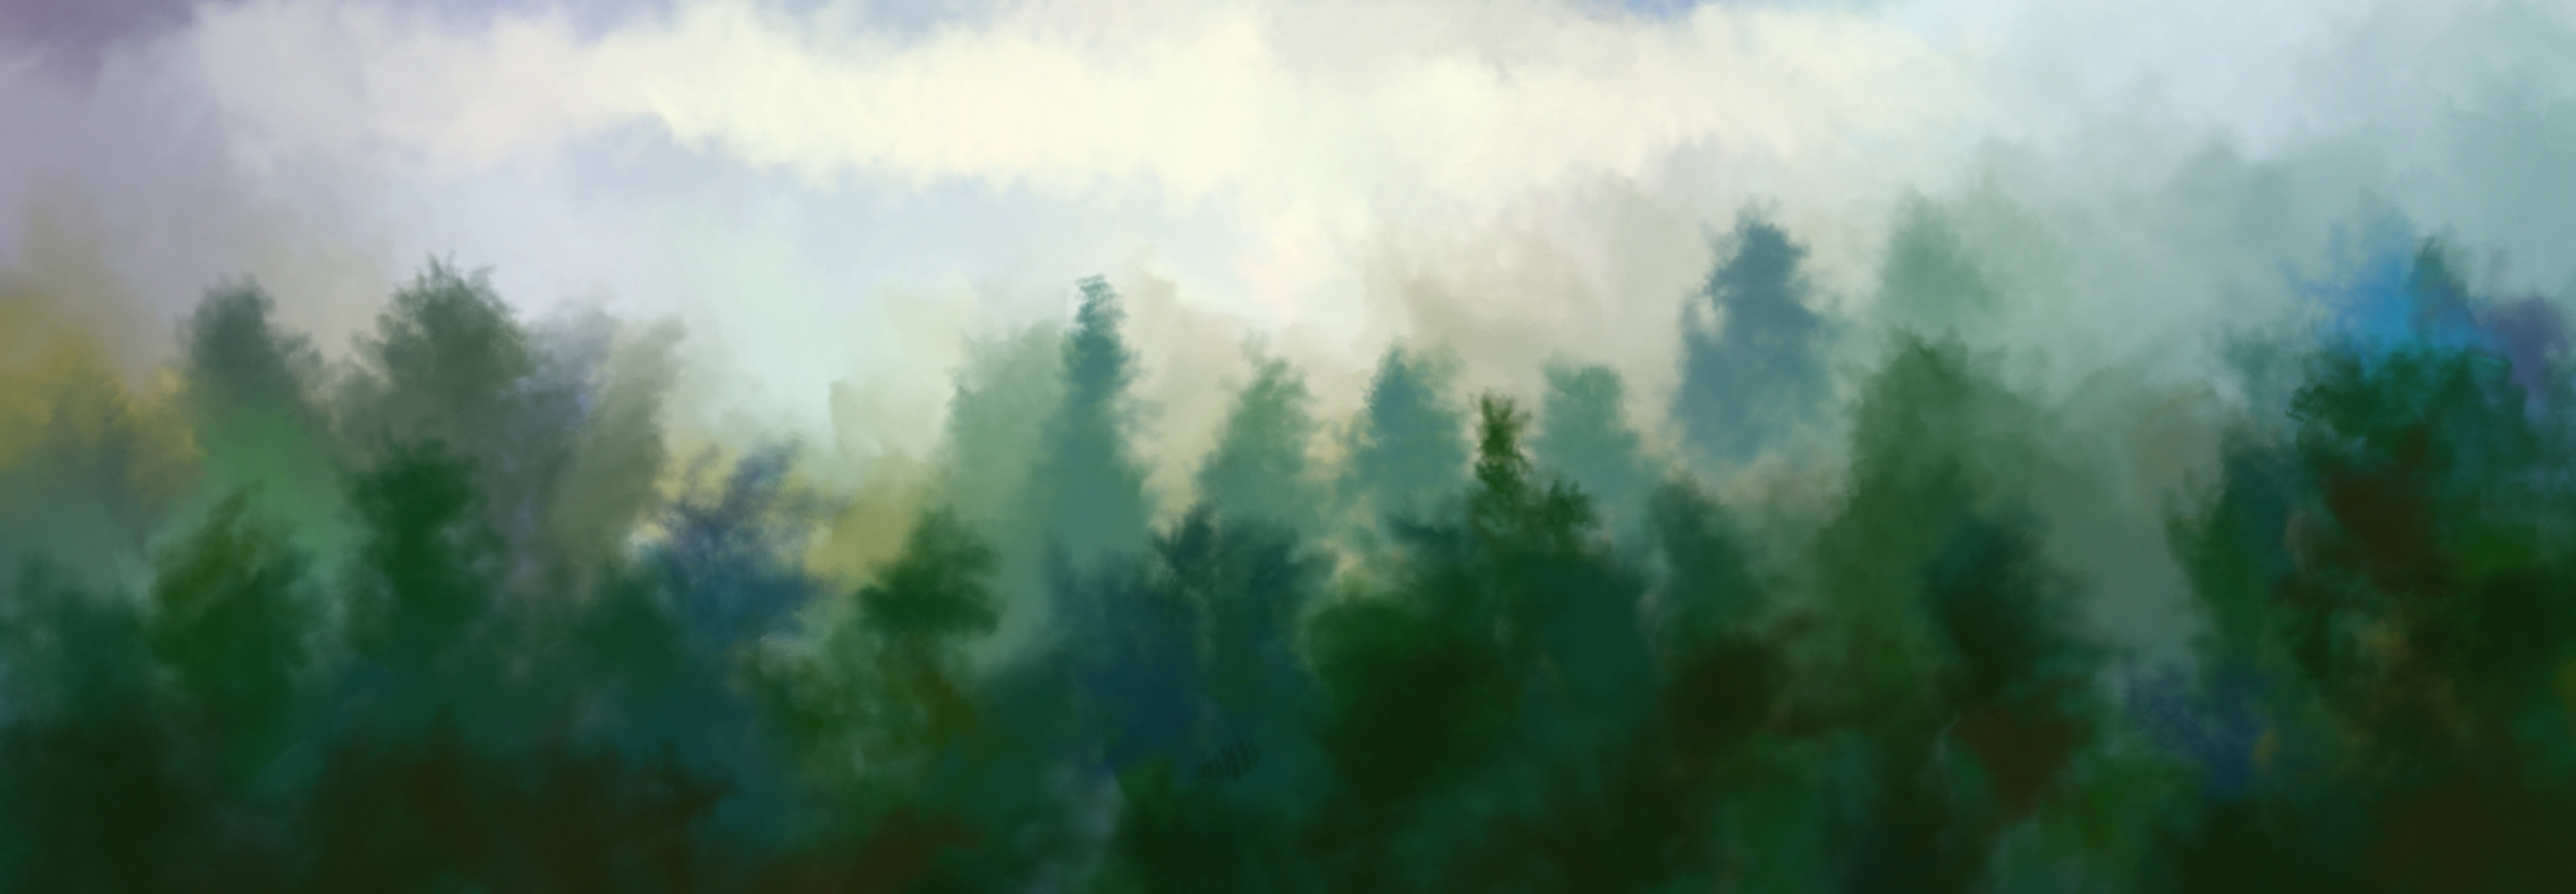 watercolor landscape​